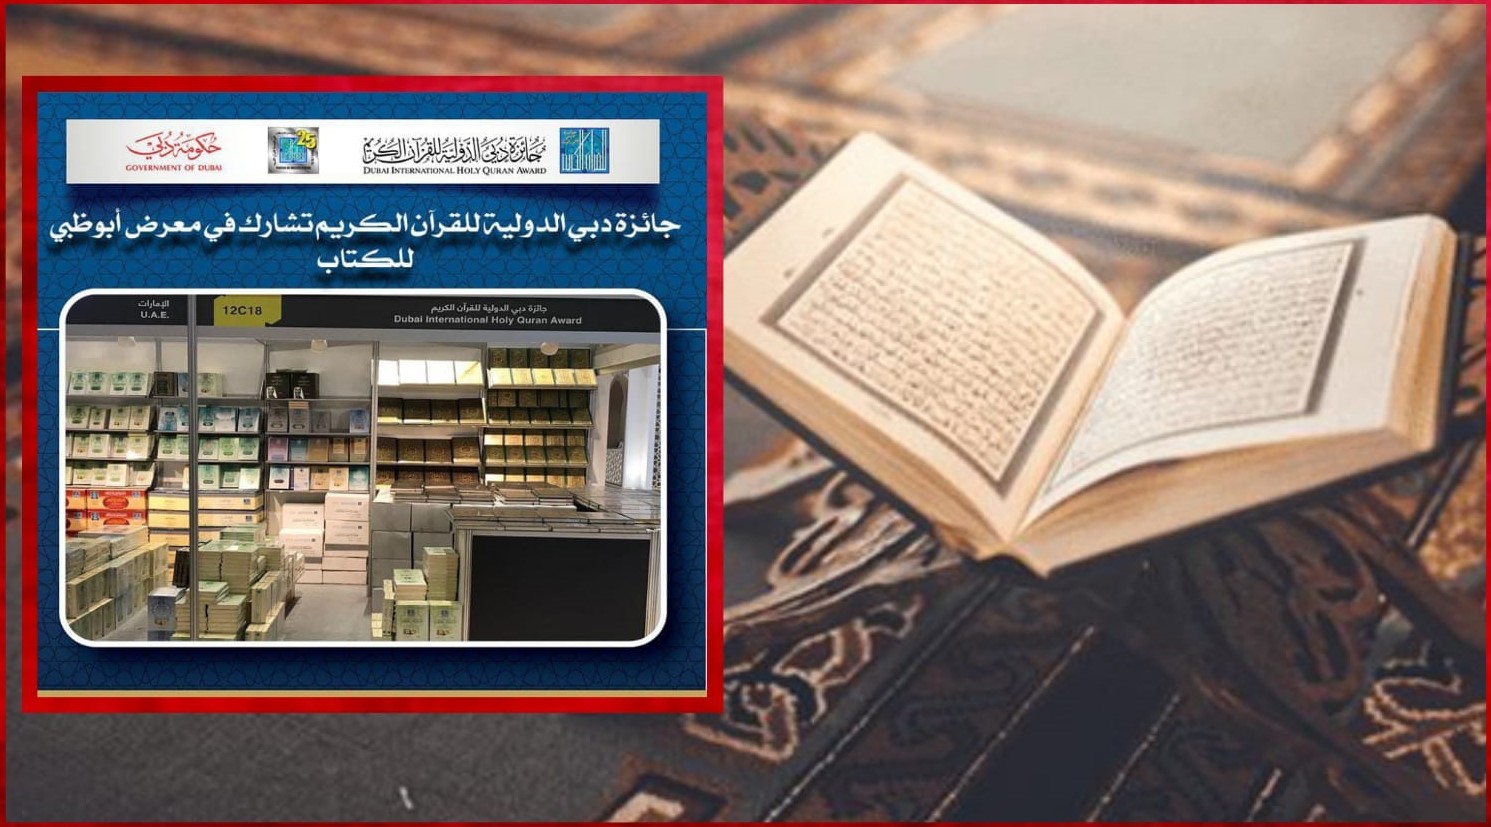 جائزة دبي للقرآن الكريم توزع نسخا من المصحف في معرض أبوظبي للكتاب